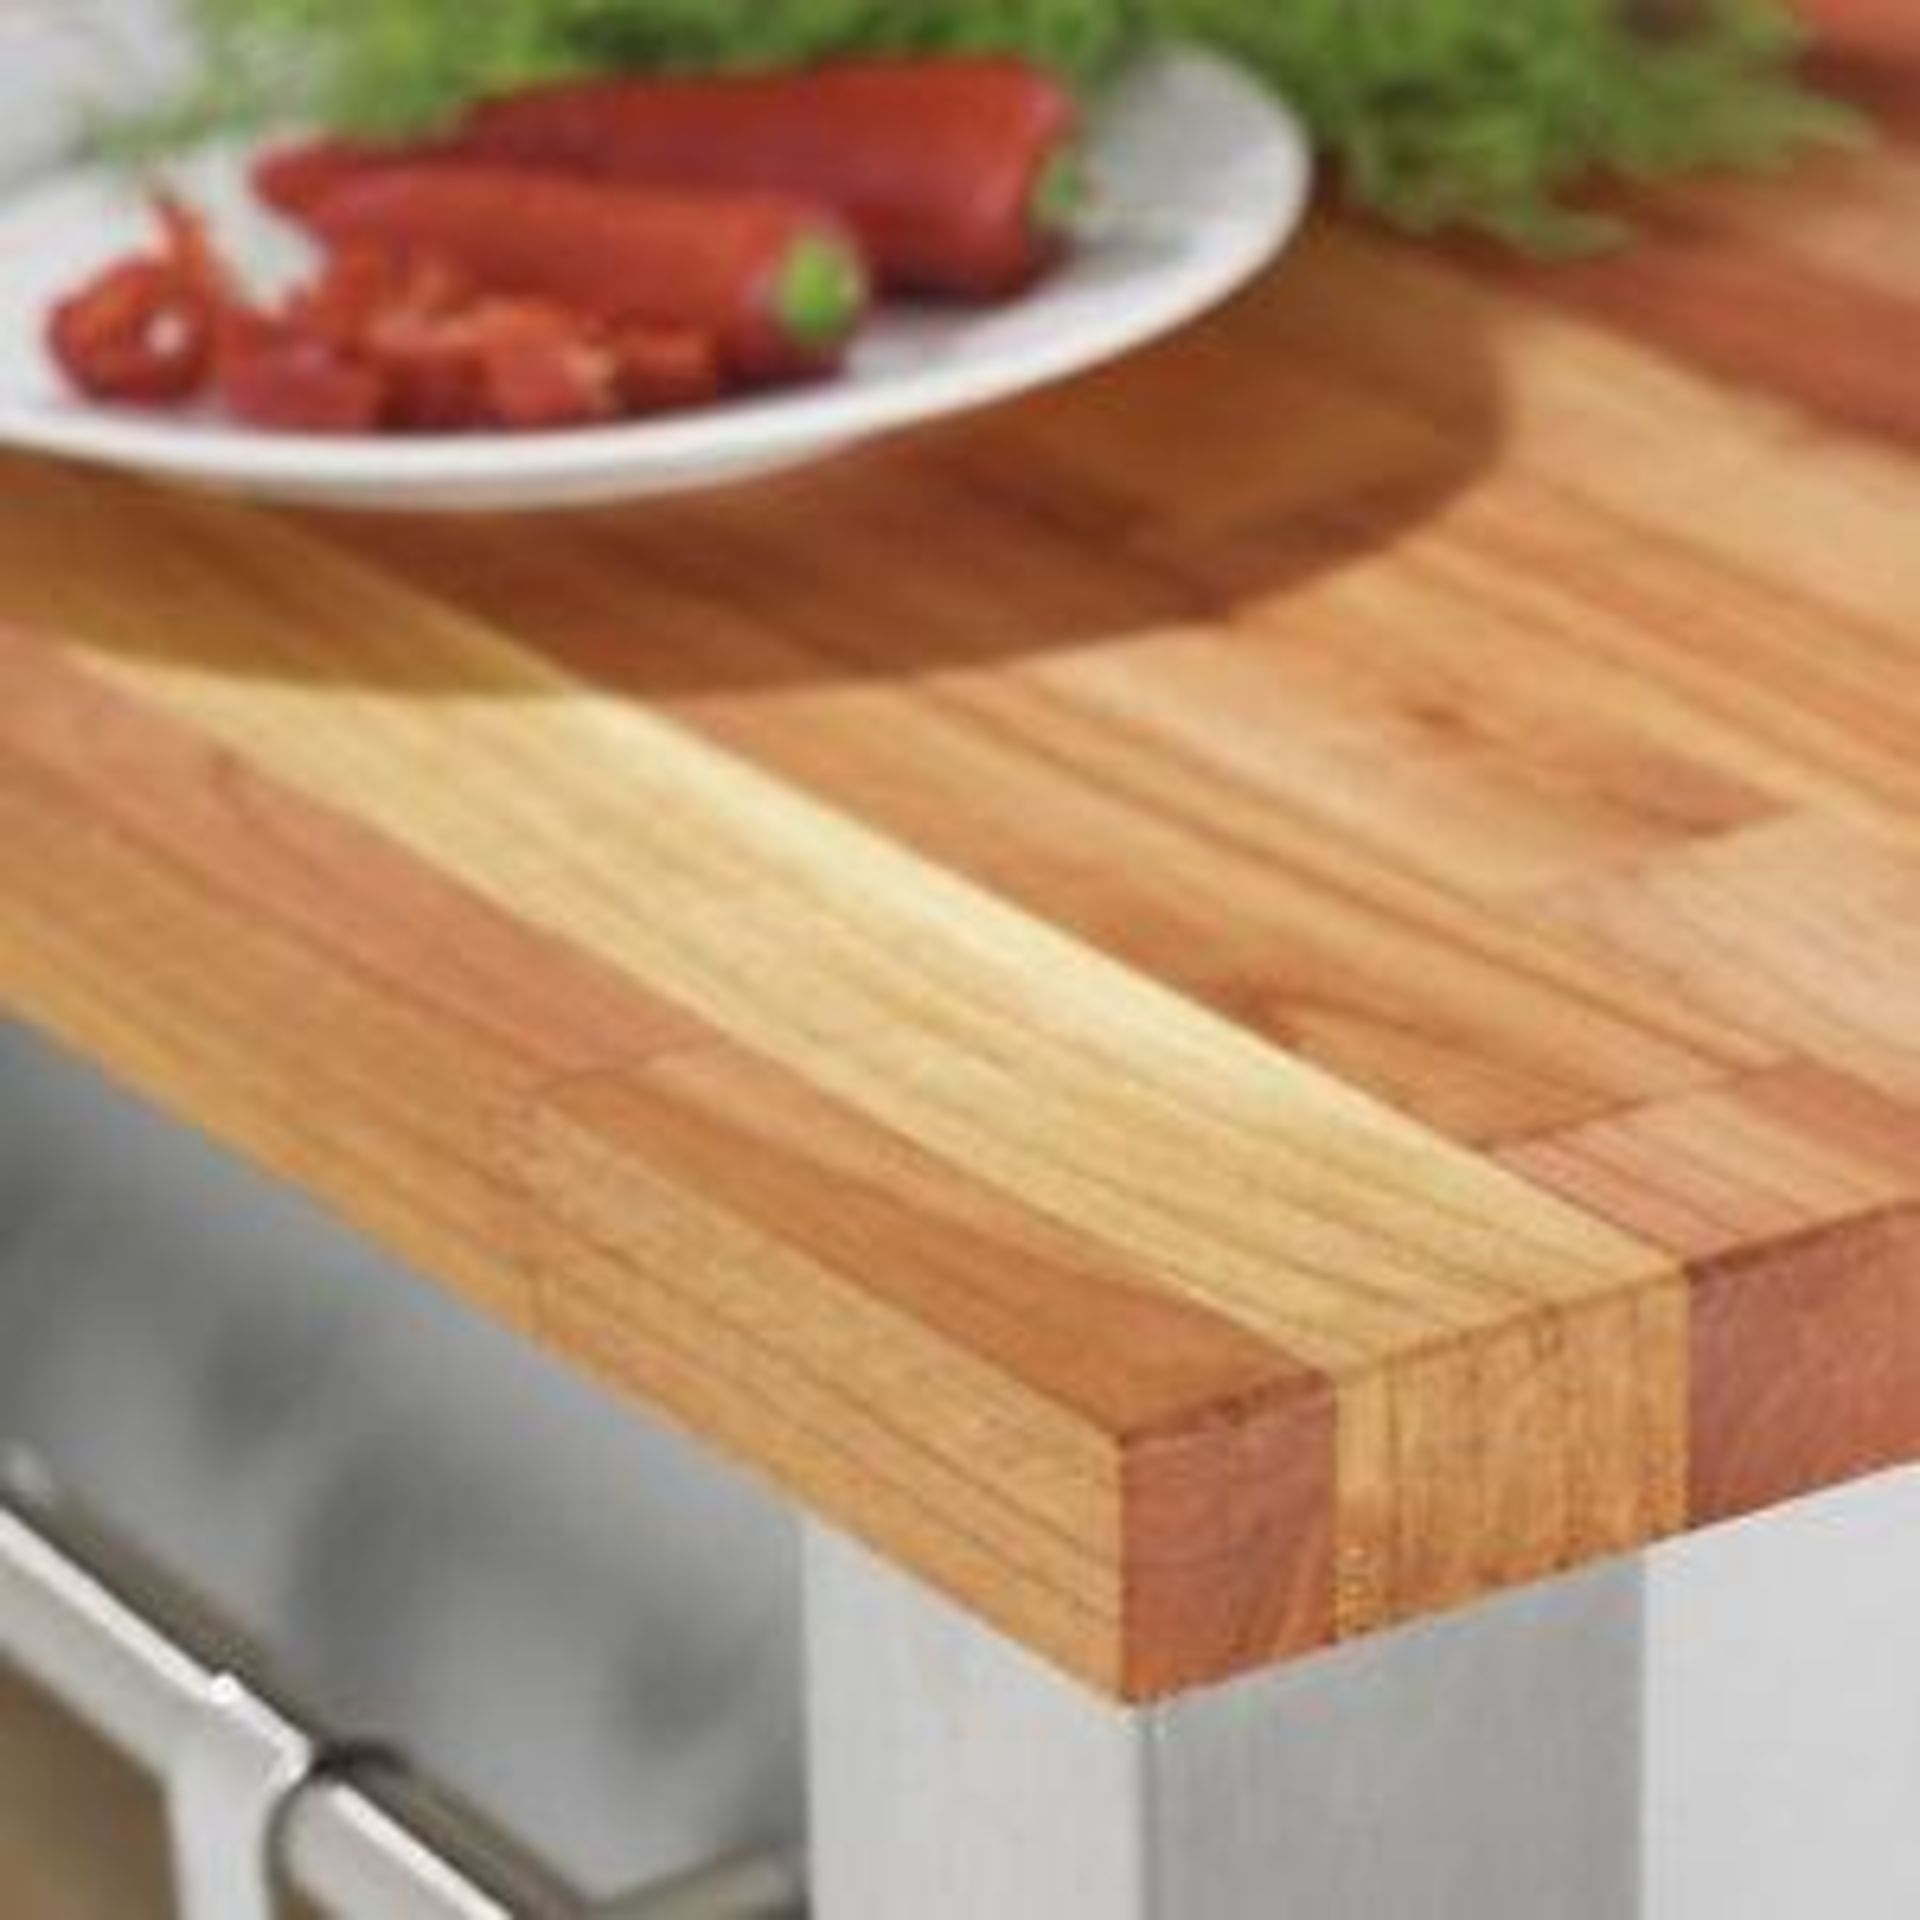 1 x Solid Wood Kitchen Worktop - CHERRY - Cherry Blockwood Kitchen Worktop - Size: 3000 x 900 x 40mm